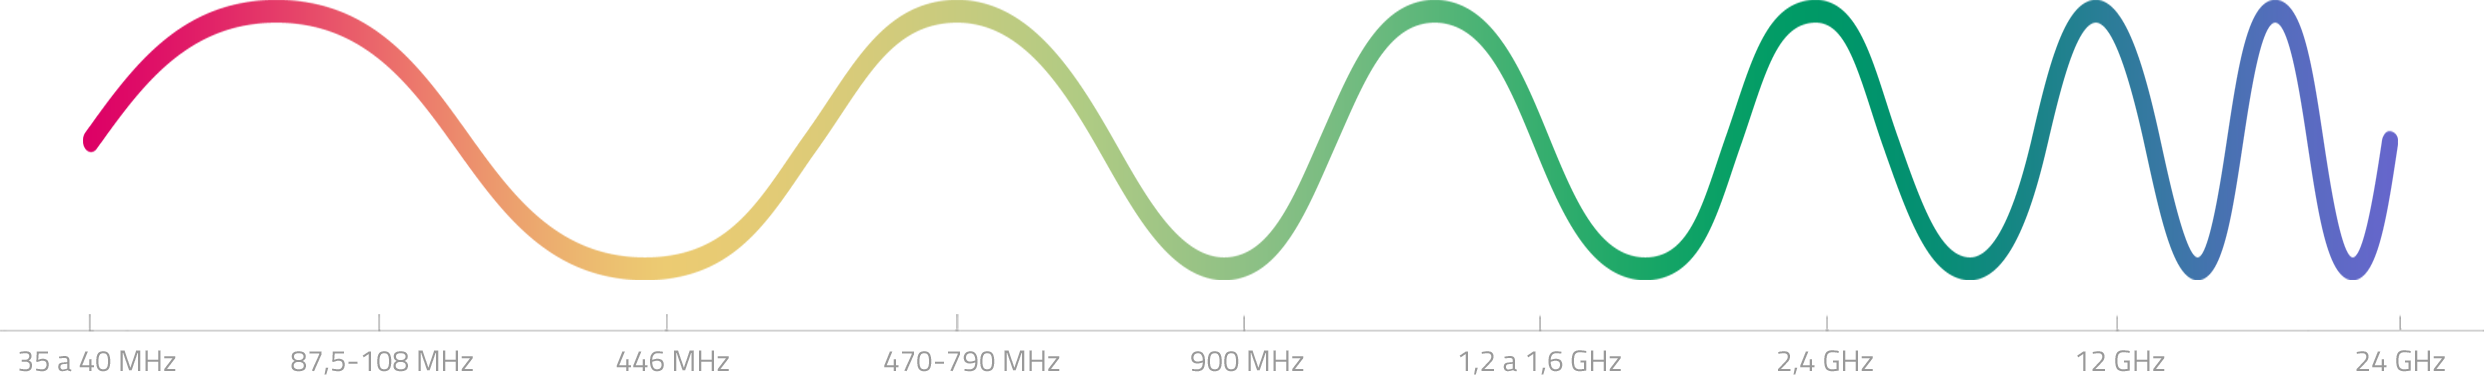 Vlnové délky rádiového spektra